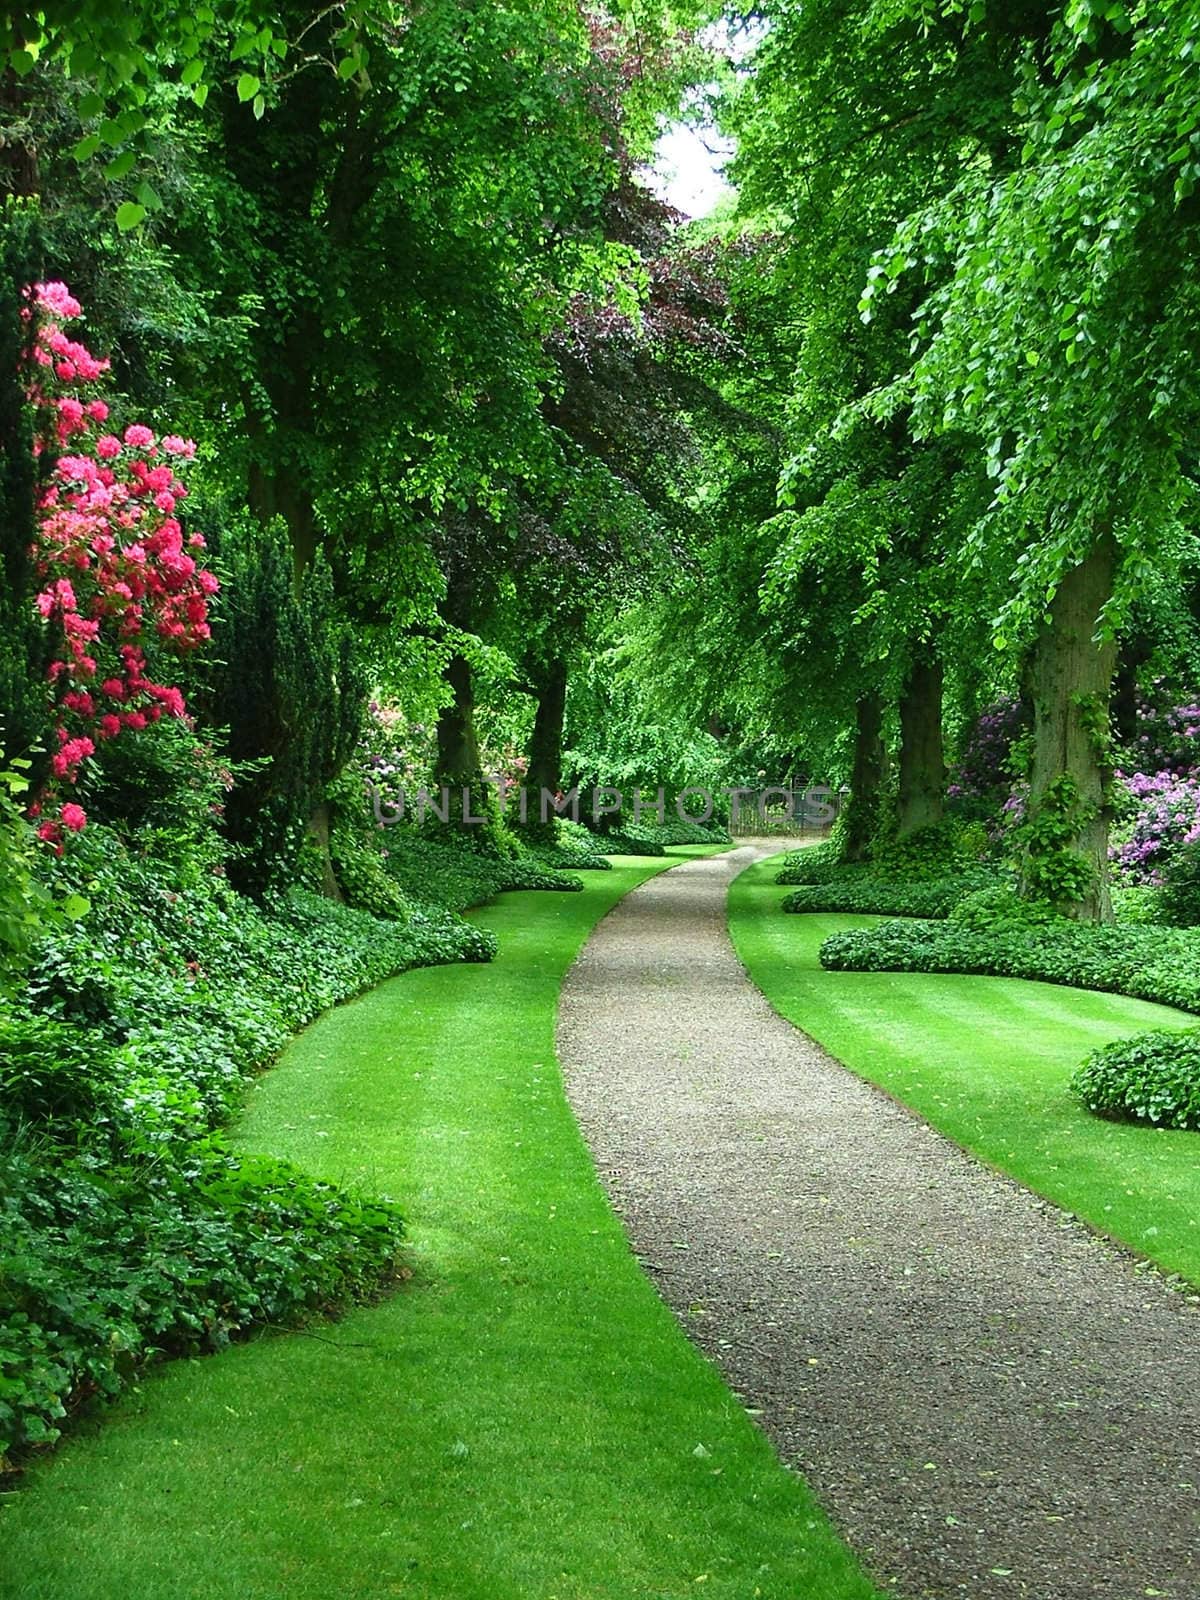 A path through a verdant garden